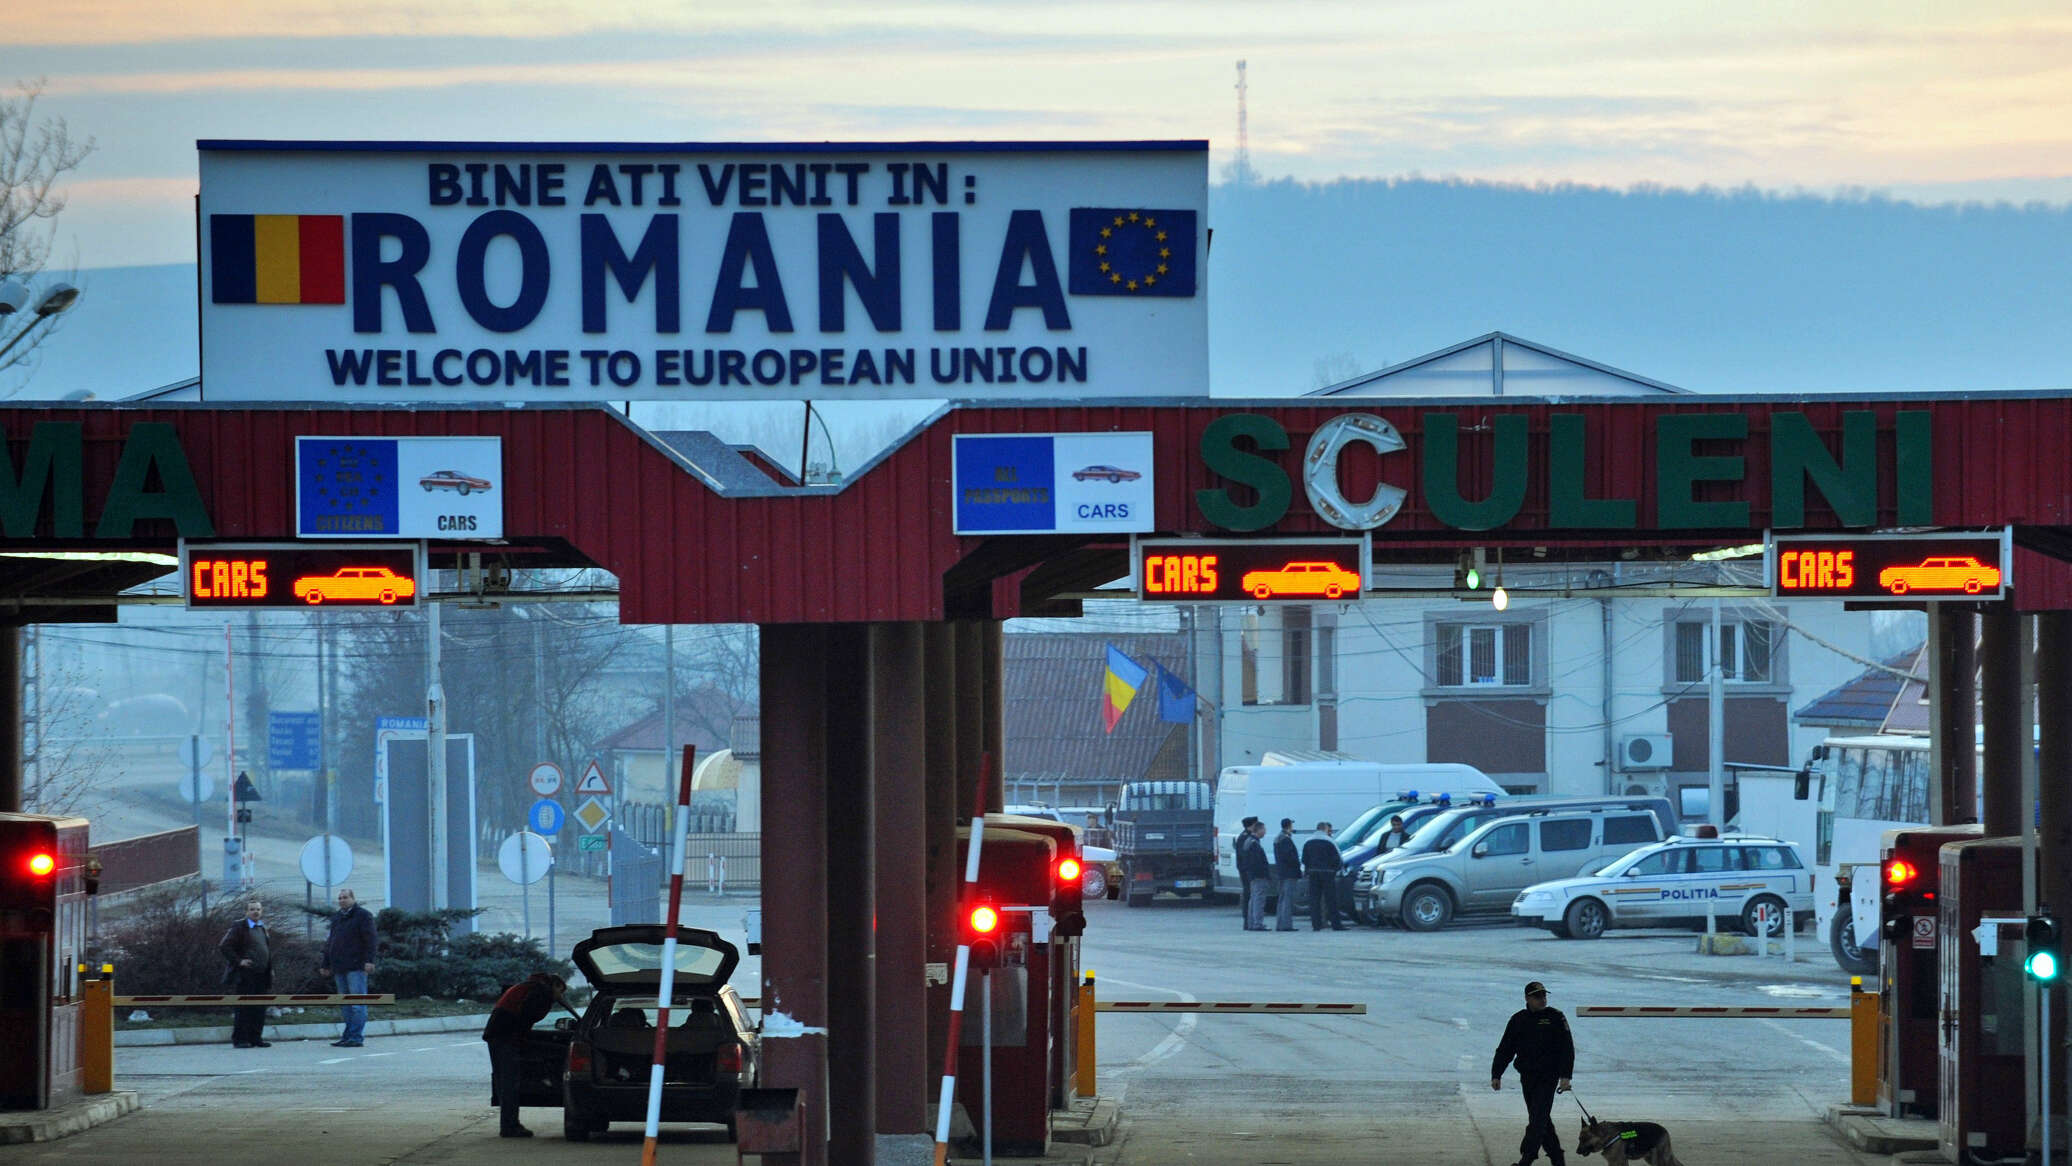 S-a dat lege! România ar putea avea o Vamă modernă și eficientă doar prin meritocrație